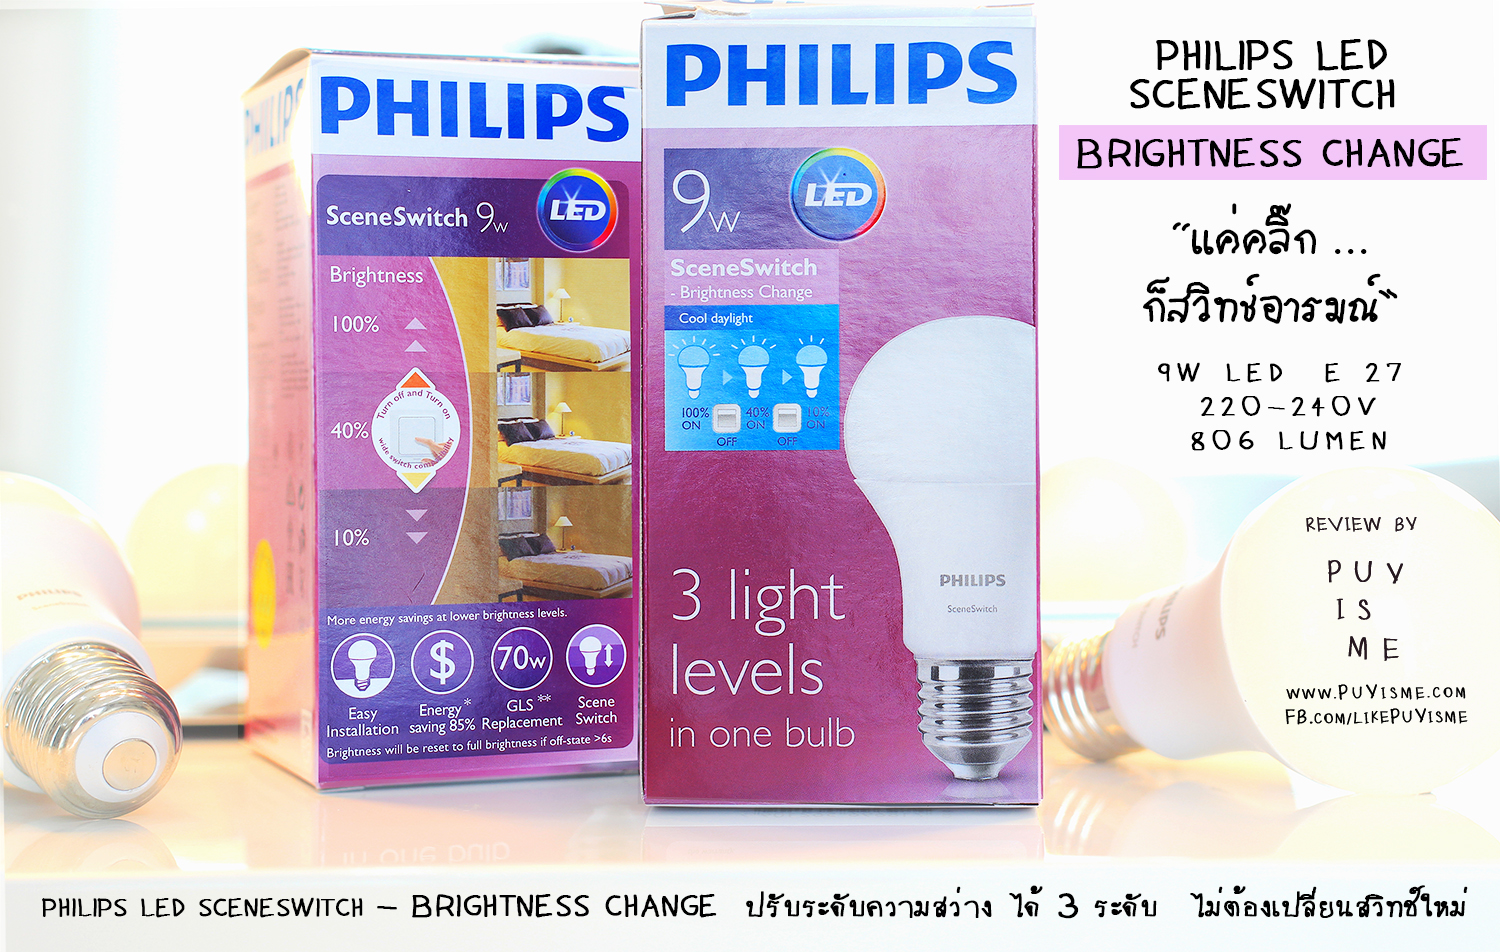 Philips - Brightness Change 04